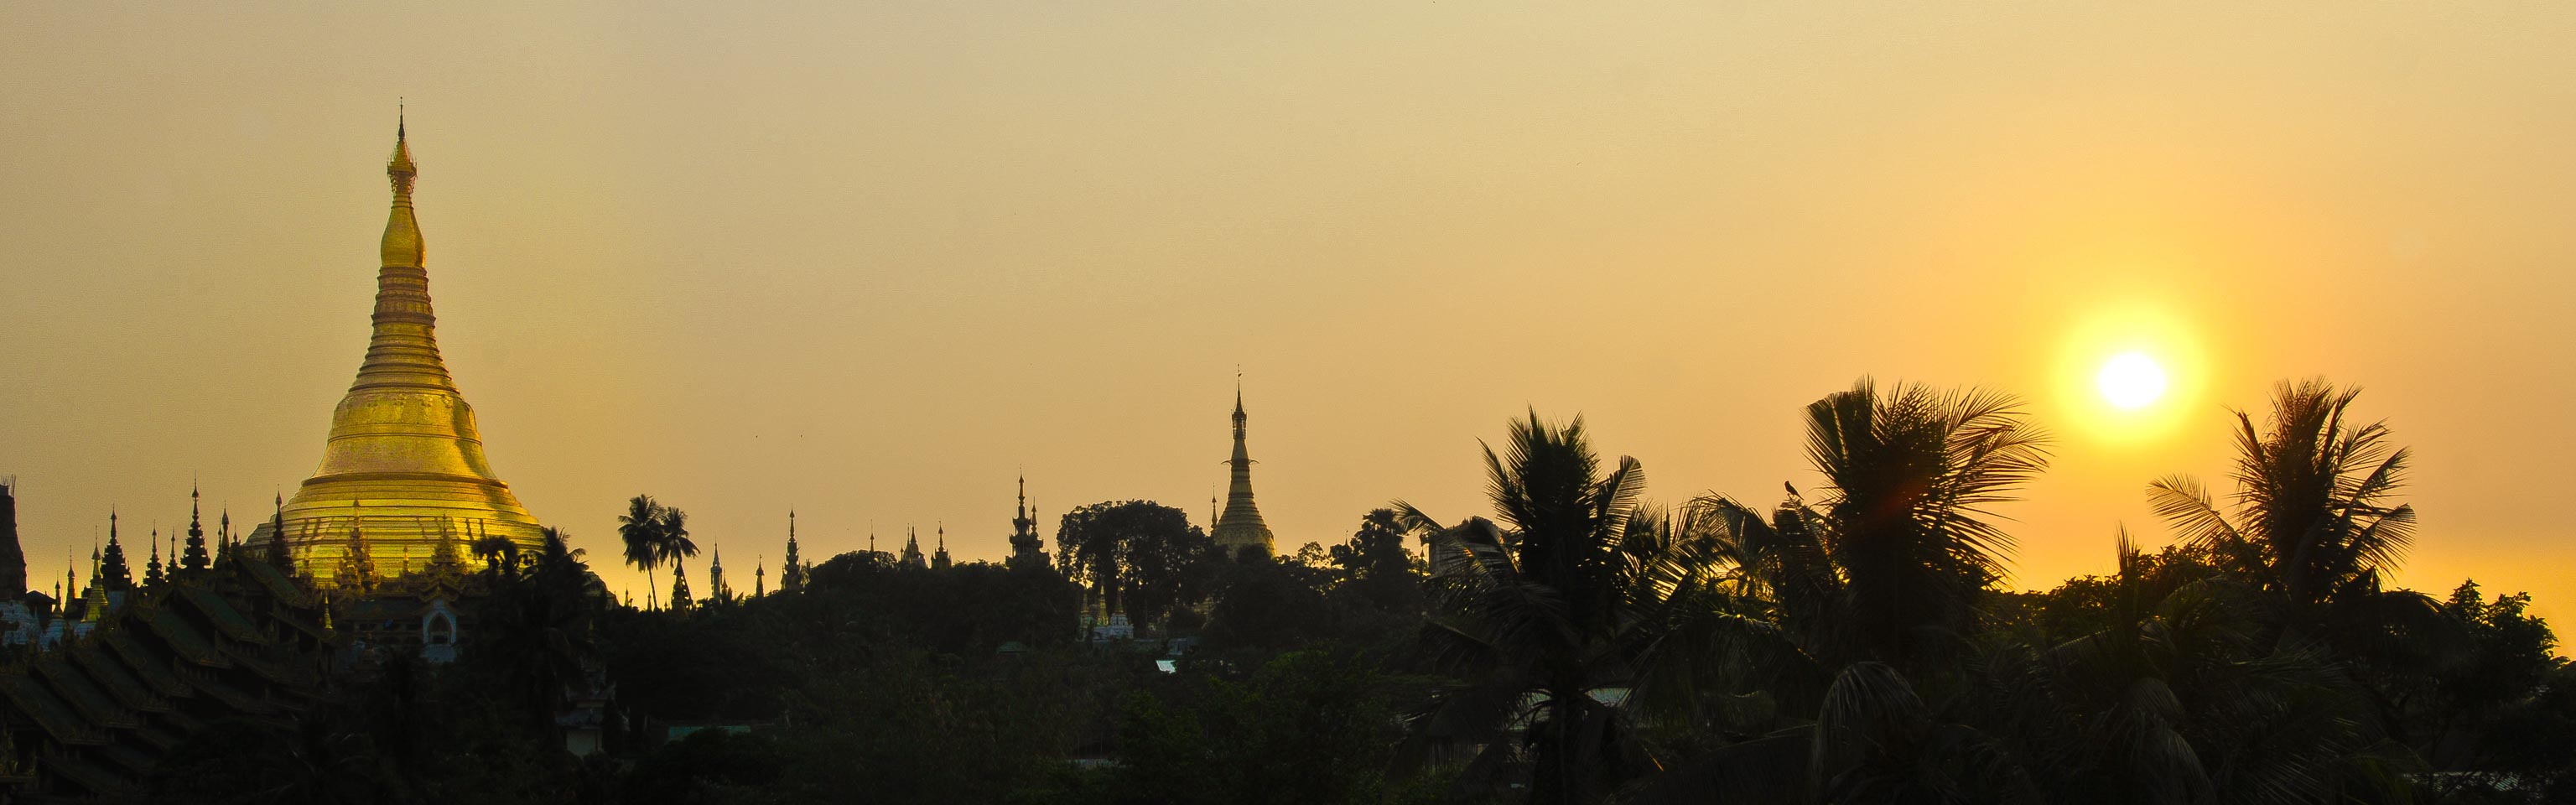 Swedagon Pagoda, Yangon, Myanmar